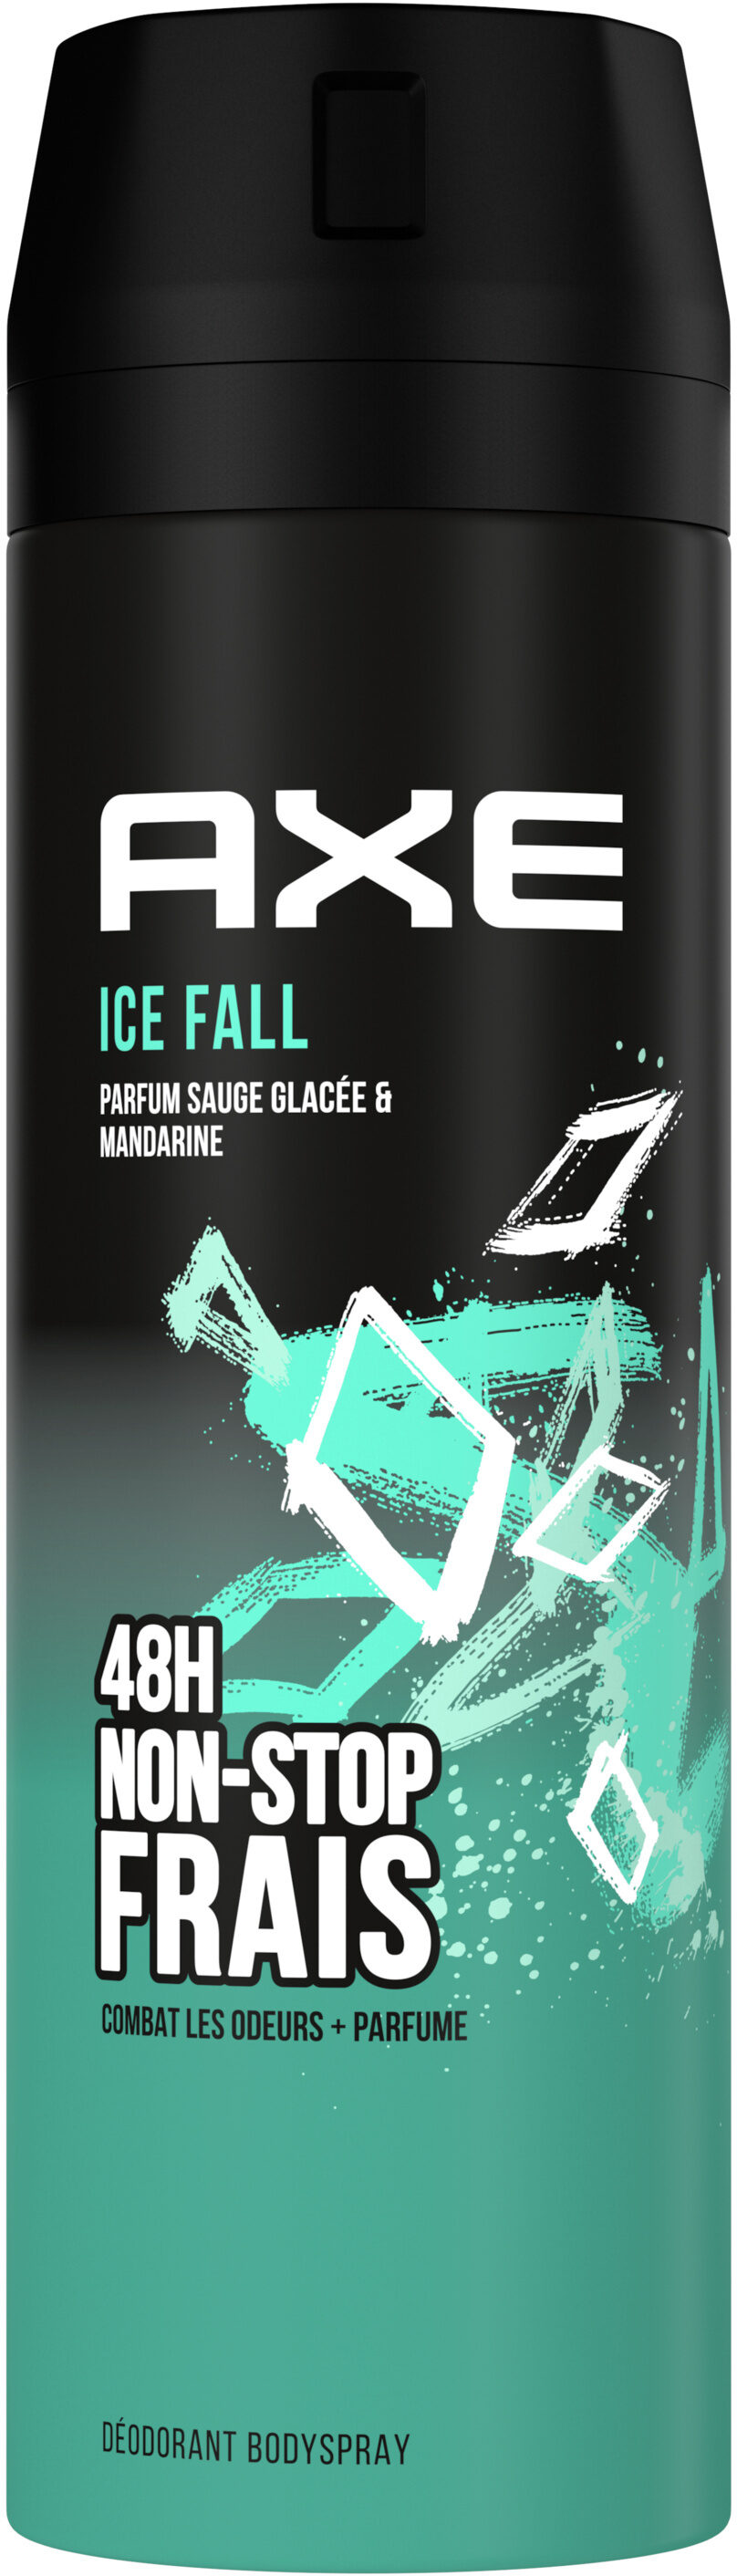 AXE Déodorant Homme Bodyspray Ice Fall 48h Non-Stop Frais - Product - fr